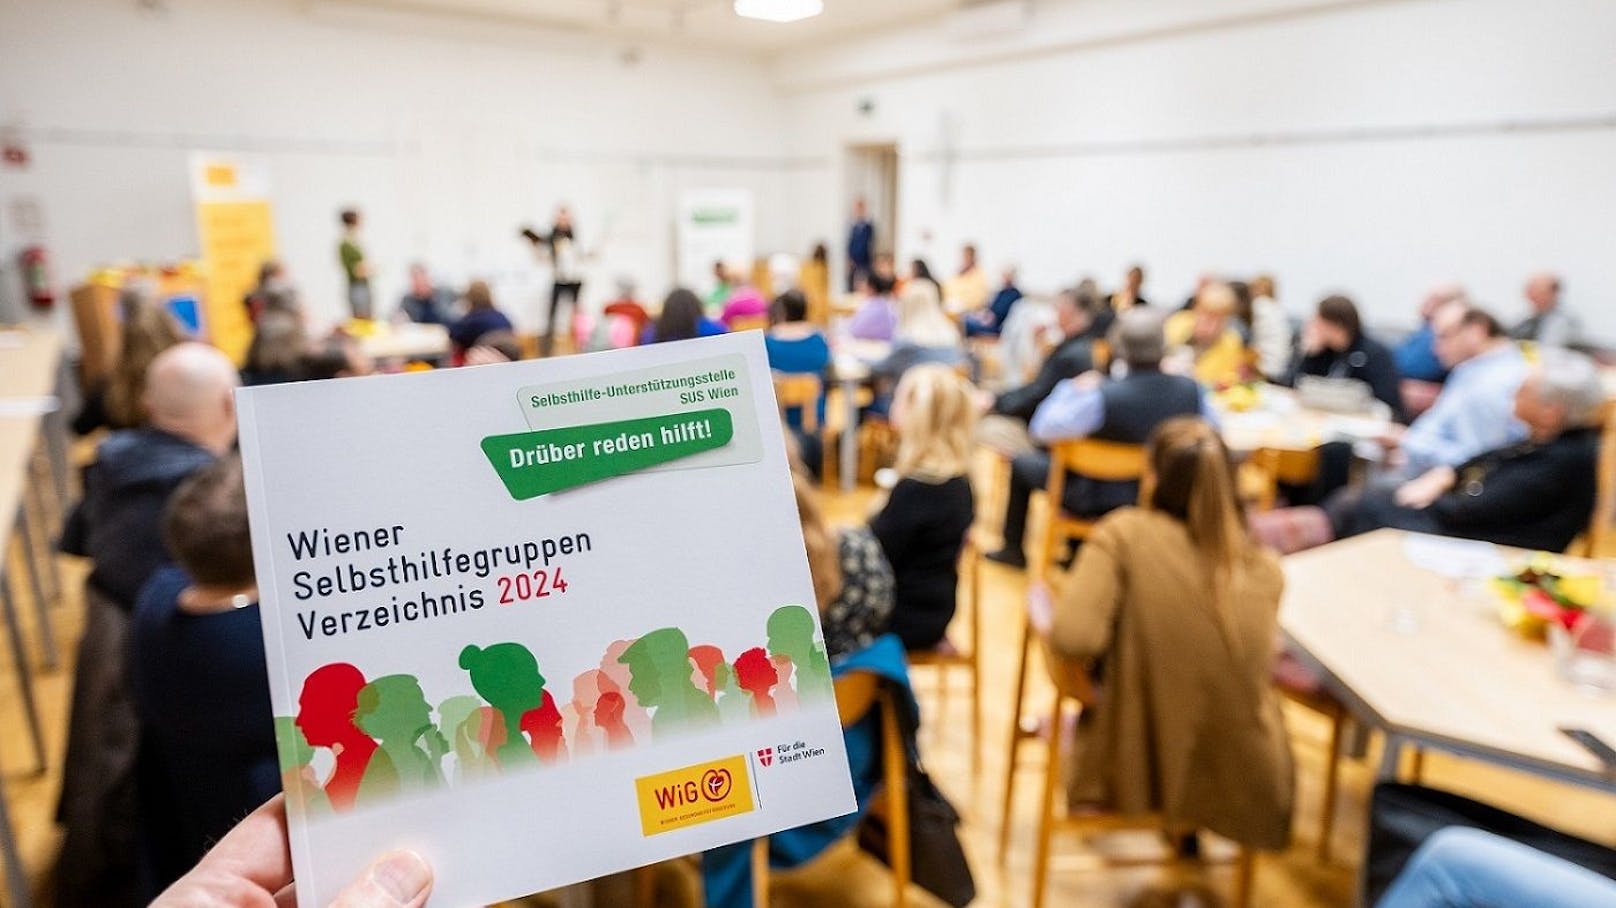 Das neue Wiener Selbsthilfegruppen Verzeichnis 2024 wurde beim Selbsthilfe-Stammtisch vor zahlreichen Vertreter*innen von Selbsthilfegruppen präsentiert.